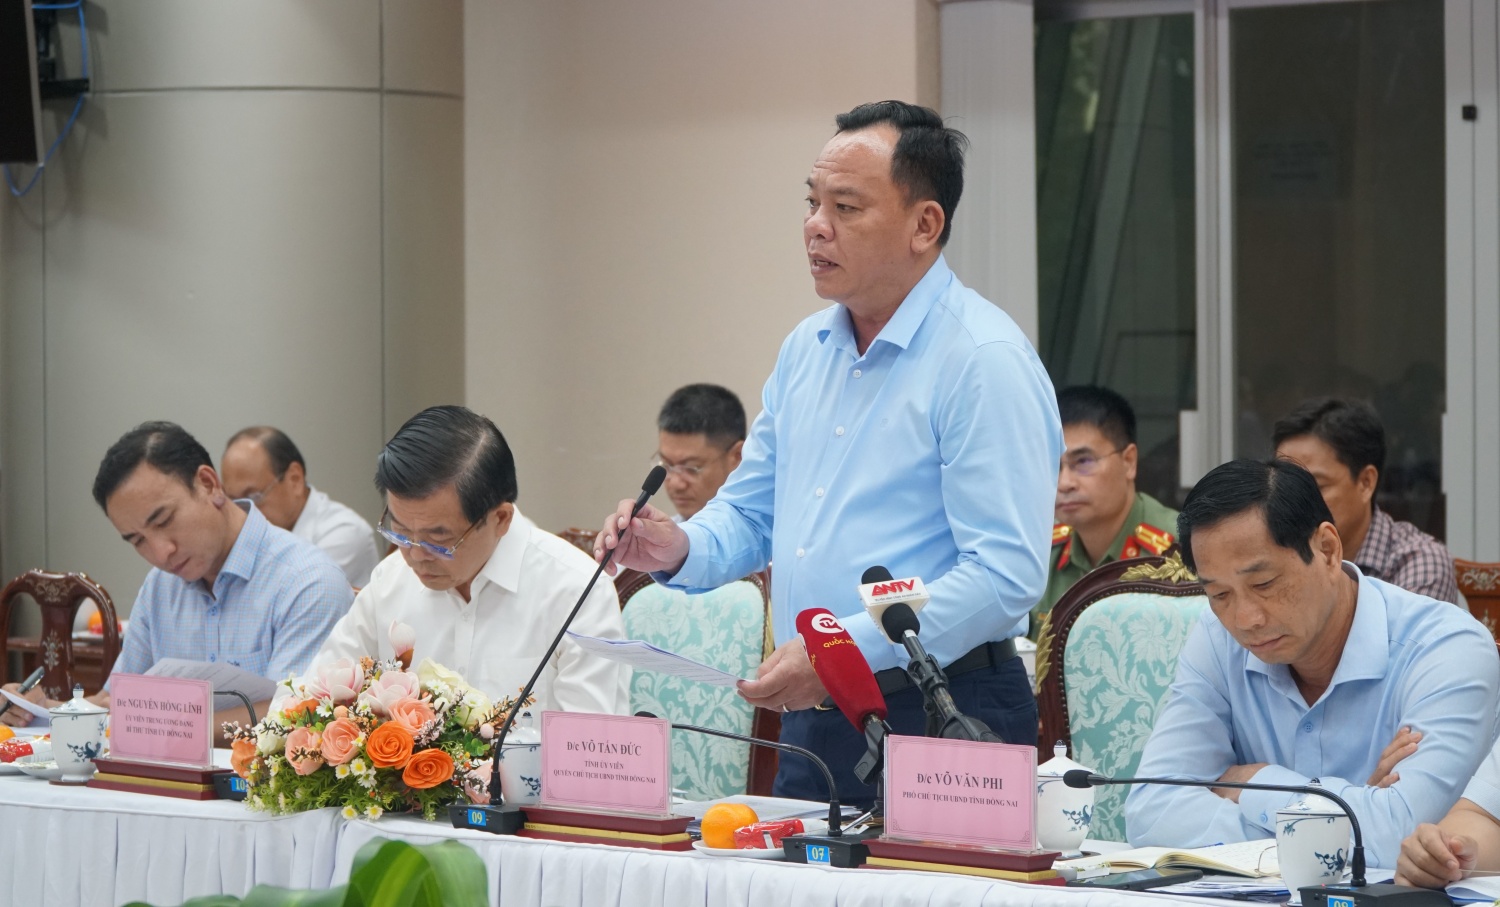 Ban Chỉ đạo Nhà nước làm việc với tỉnh Đồng Nai: Thống nhất phương án tháo gỡ vướng mắc Dự án NMĐ Nhơn Trạch 3 và 4